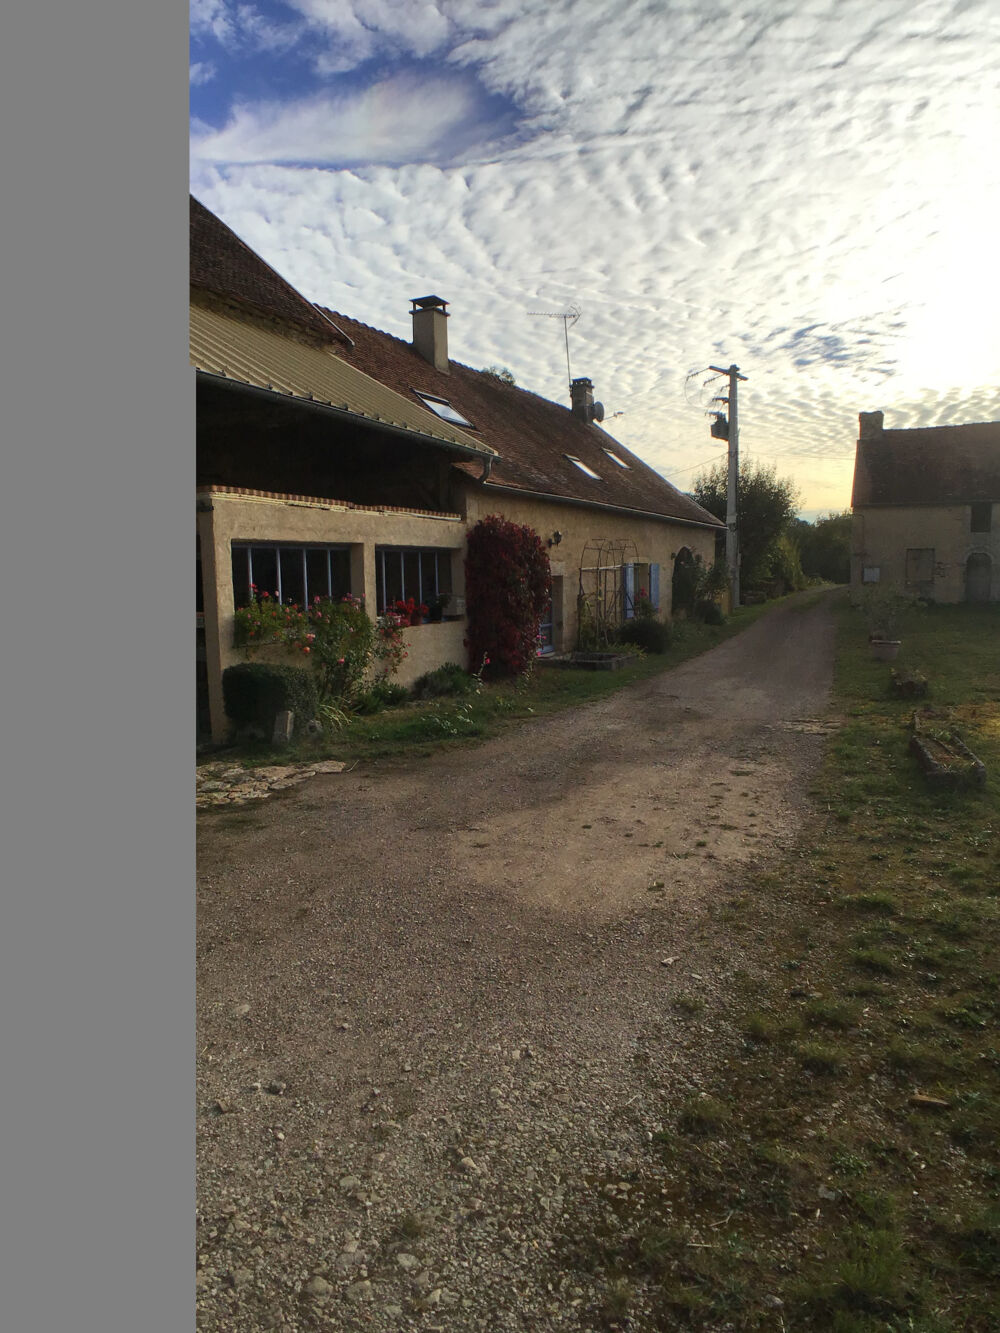 Vente Ferme Ancien corps de ferme avec habitation et dpendances sur plus d'1 hectare dans le canton d' AIGNAY- LE- DUC Bellenod sur seine